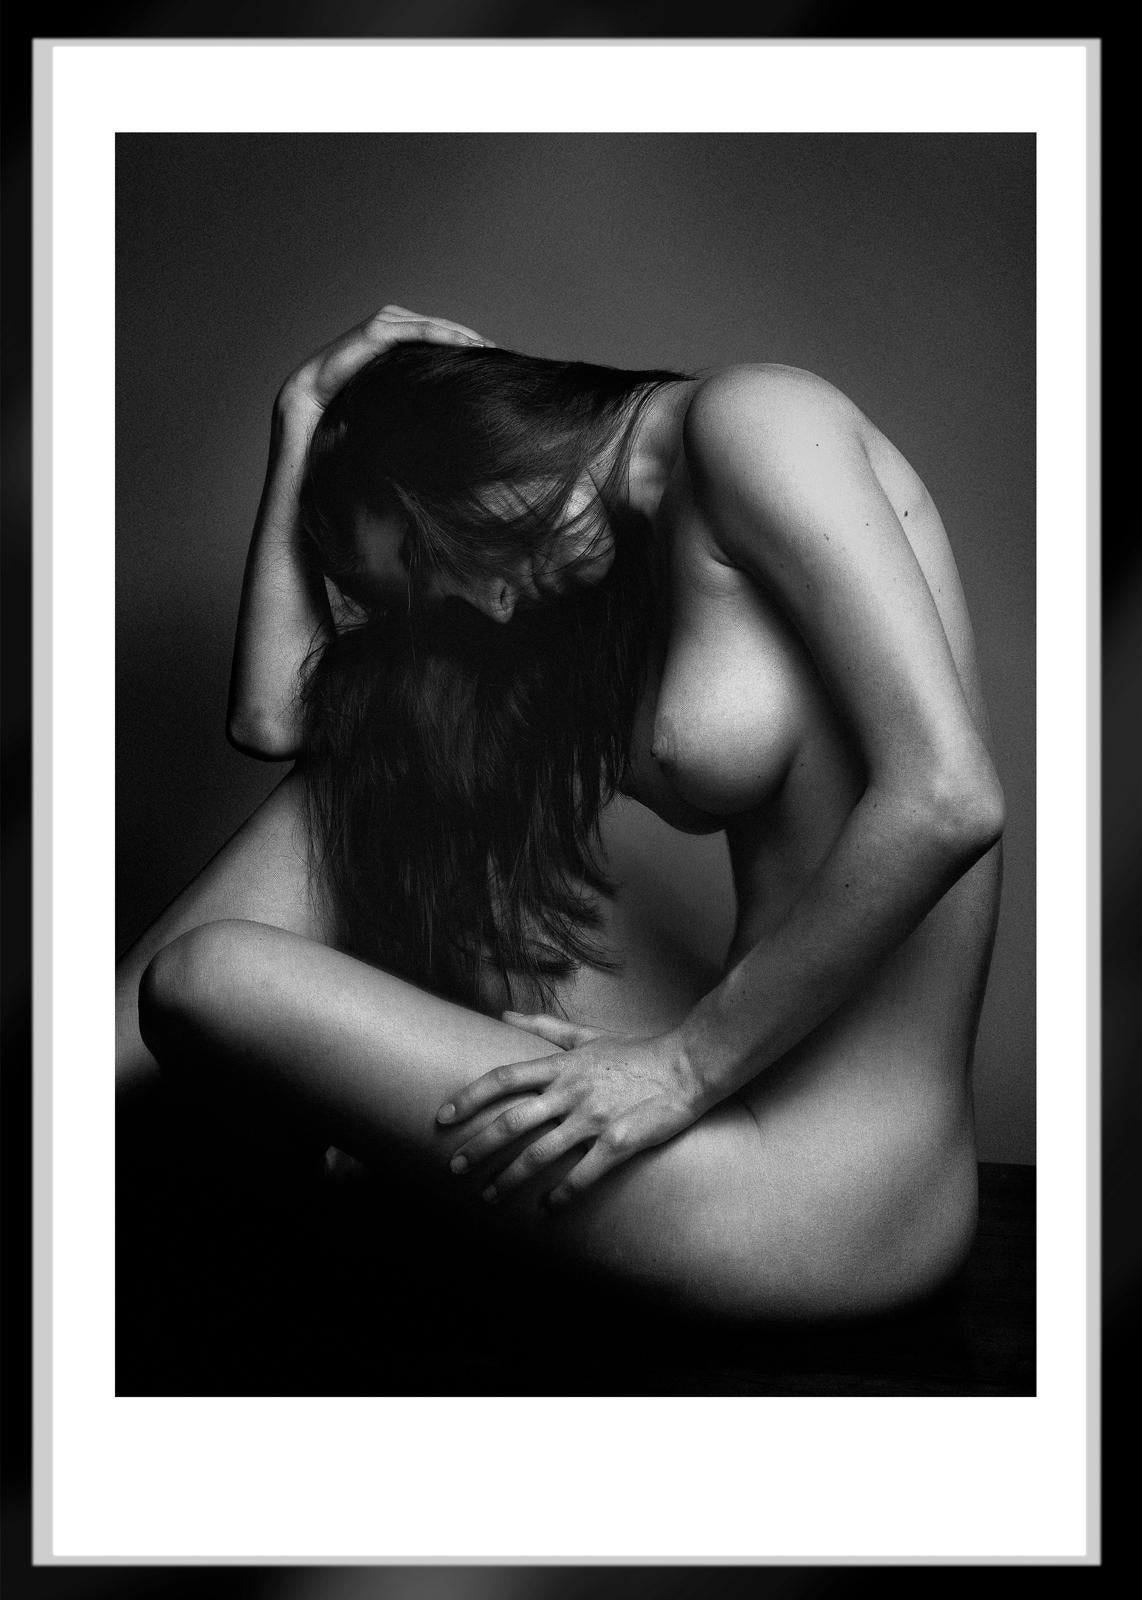 Sophie – signierter Aktdruck in limitierter Auflage, Schwarzweiß, Nackte Frau, Porträt (Zeitgenössisch), Photograph, von Ian Sanderson